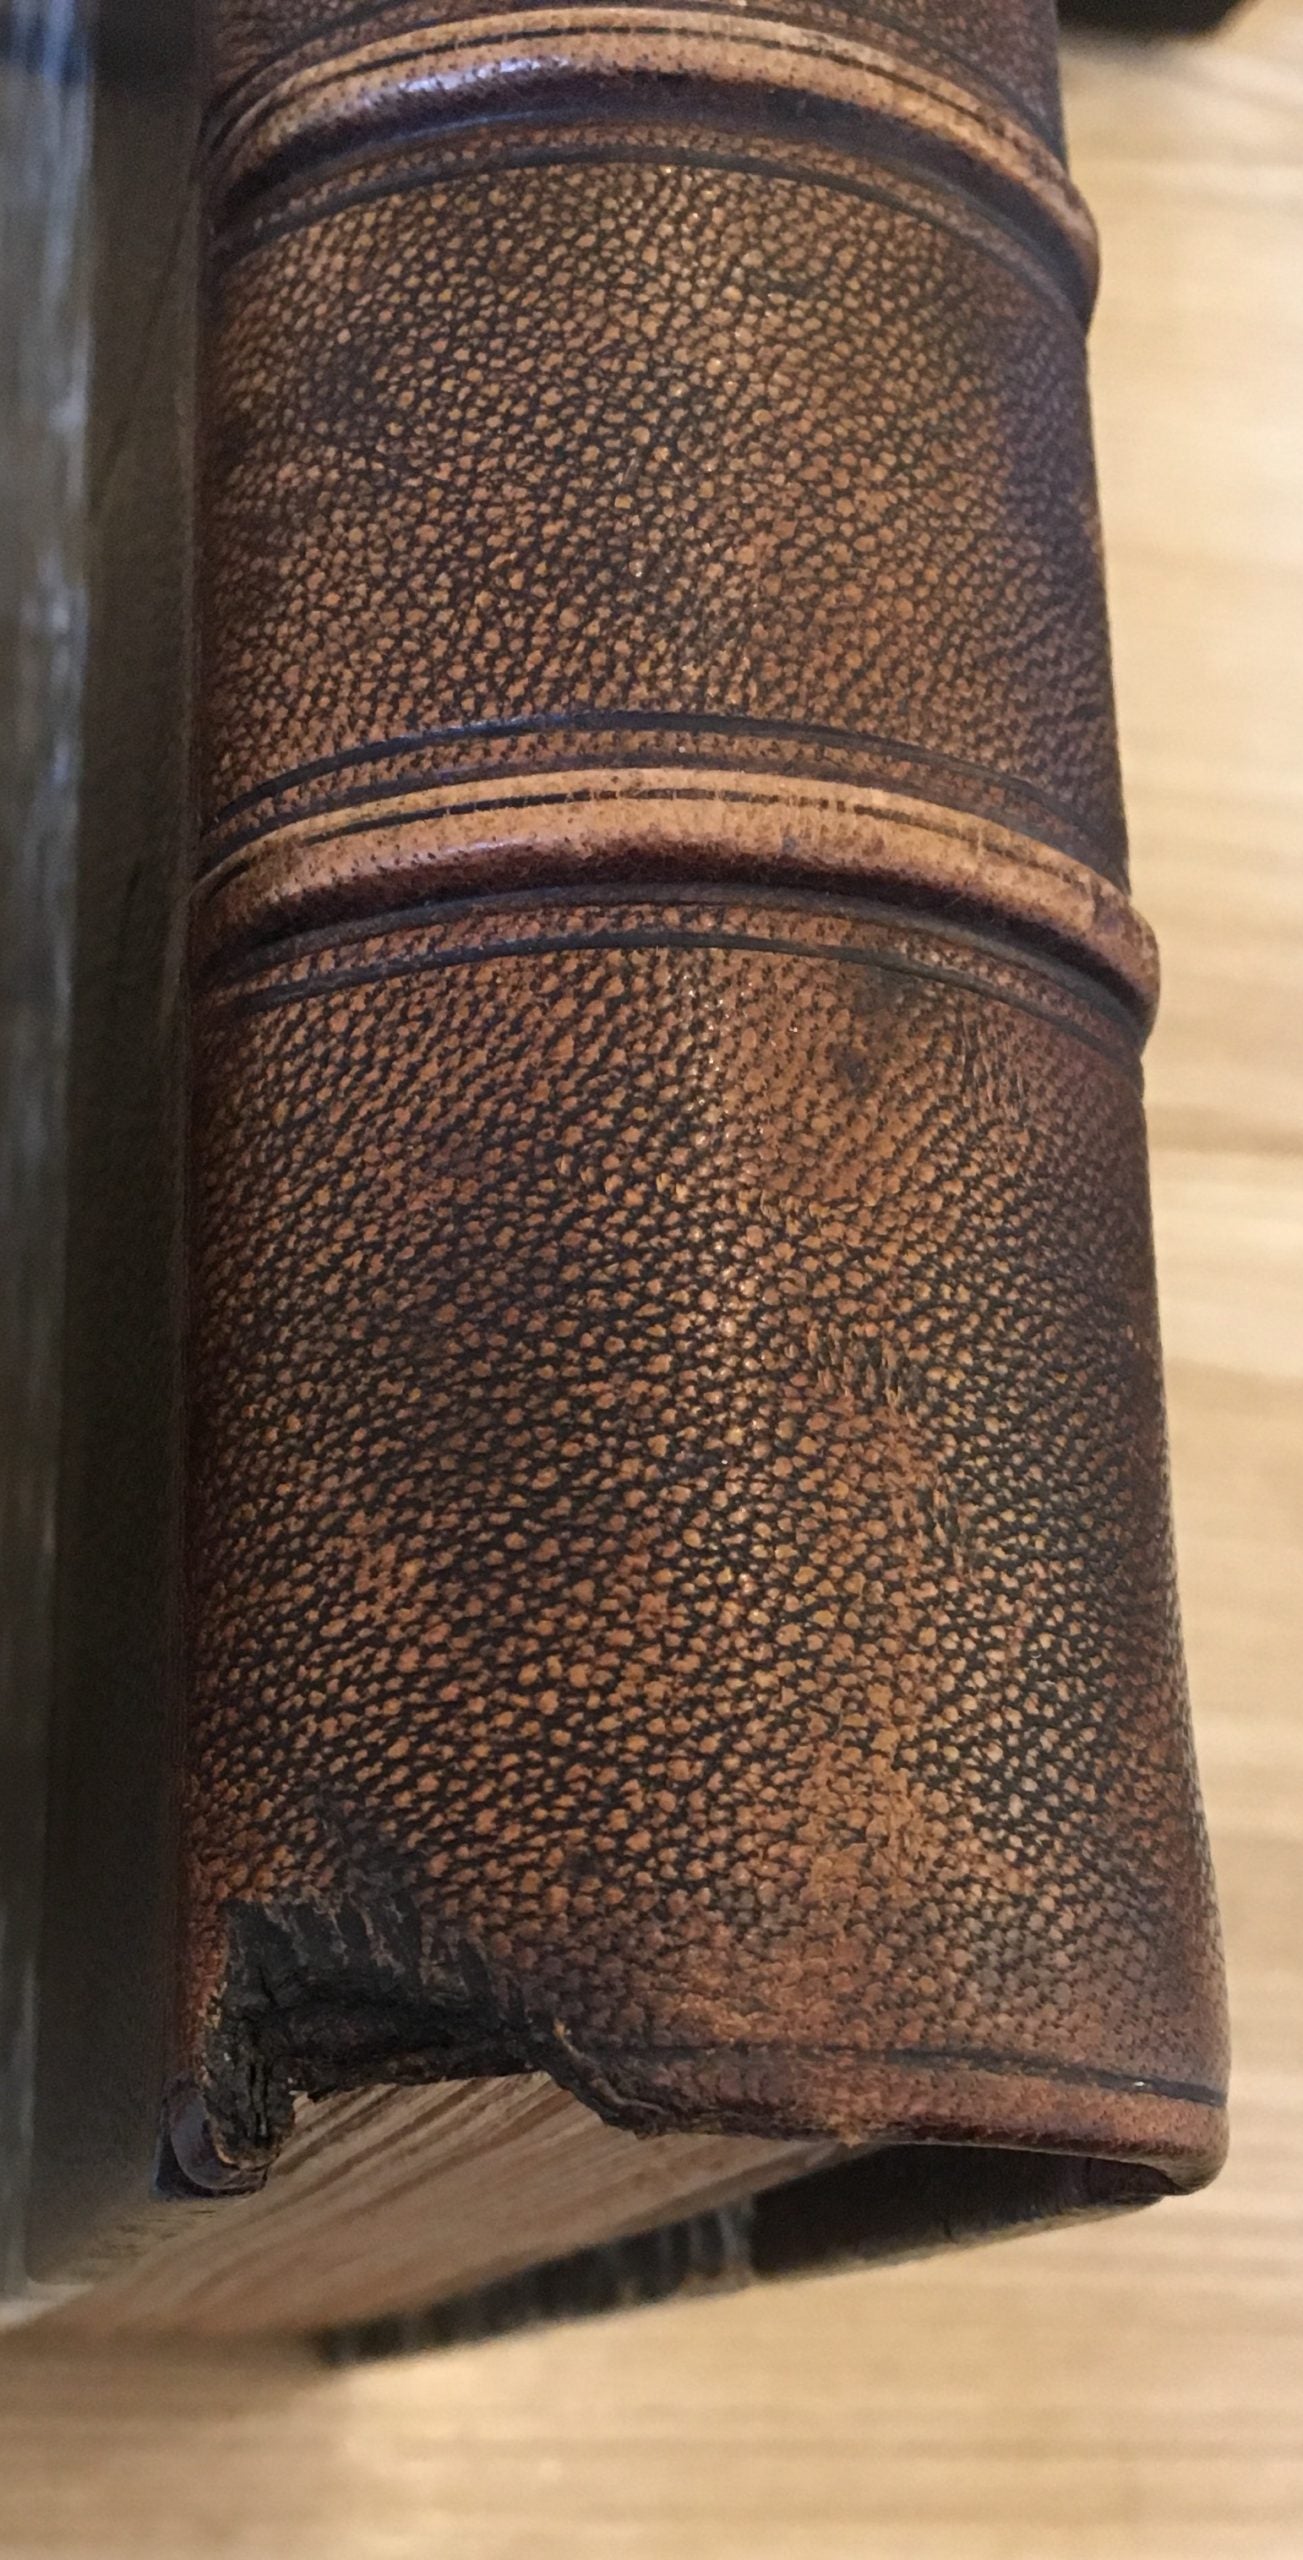 Bibliographie d' éditions originales et rares d'auteurs Francais (XV, XVI, XVII et XVIII siècles)